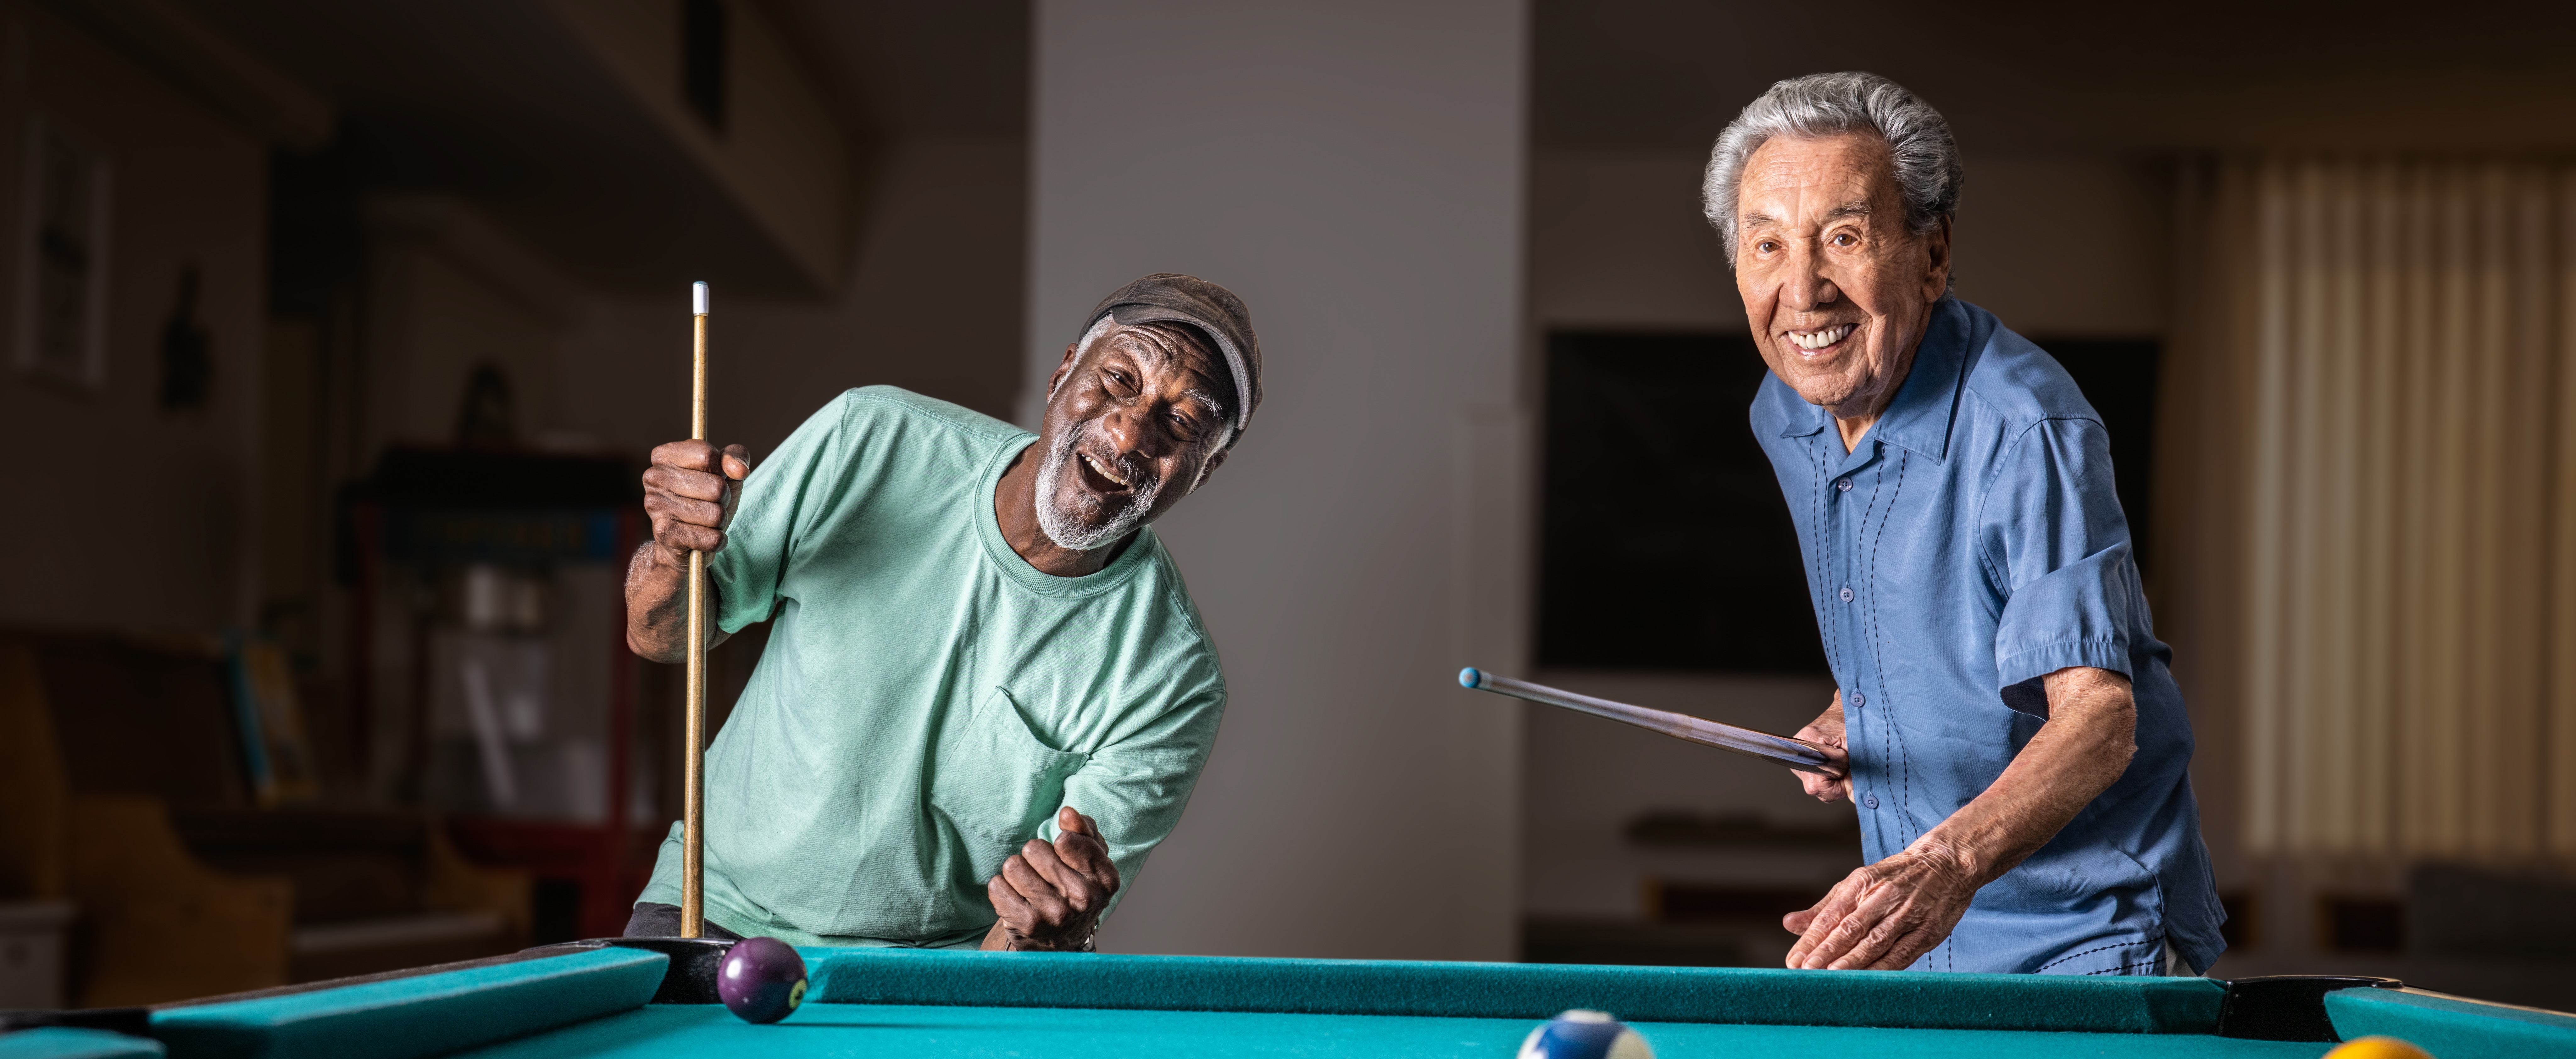 two men playing pool 